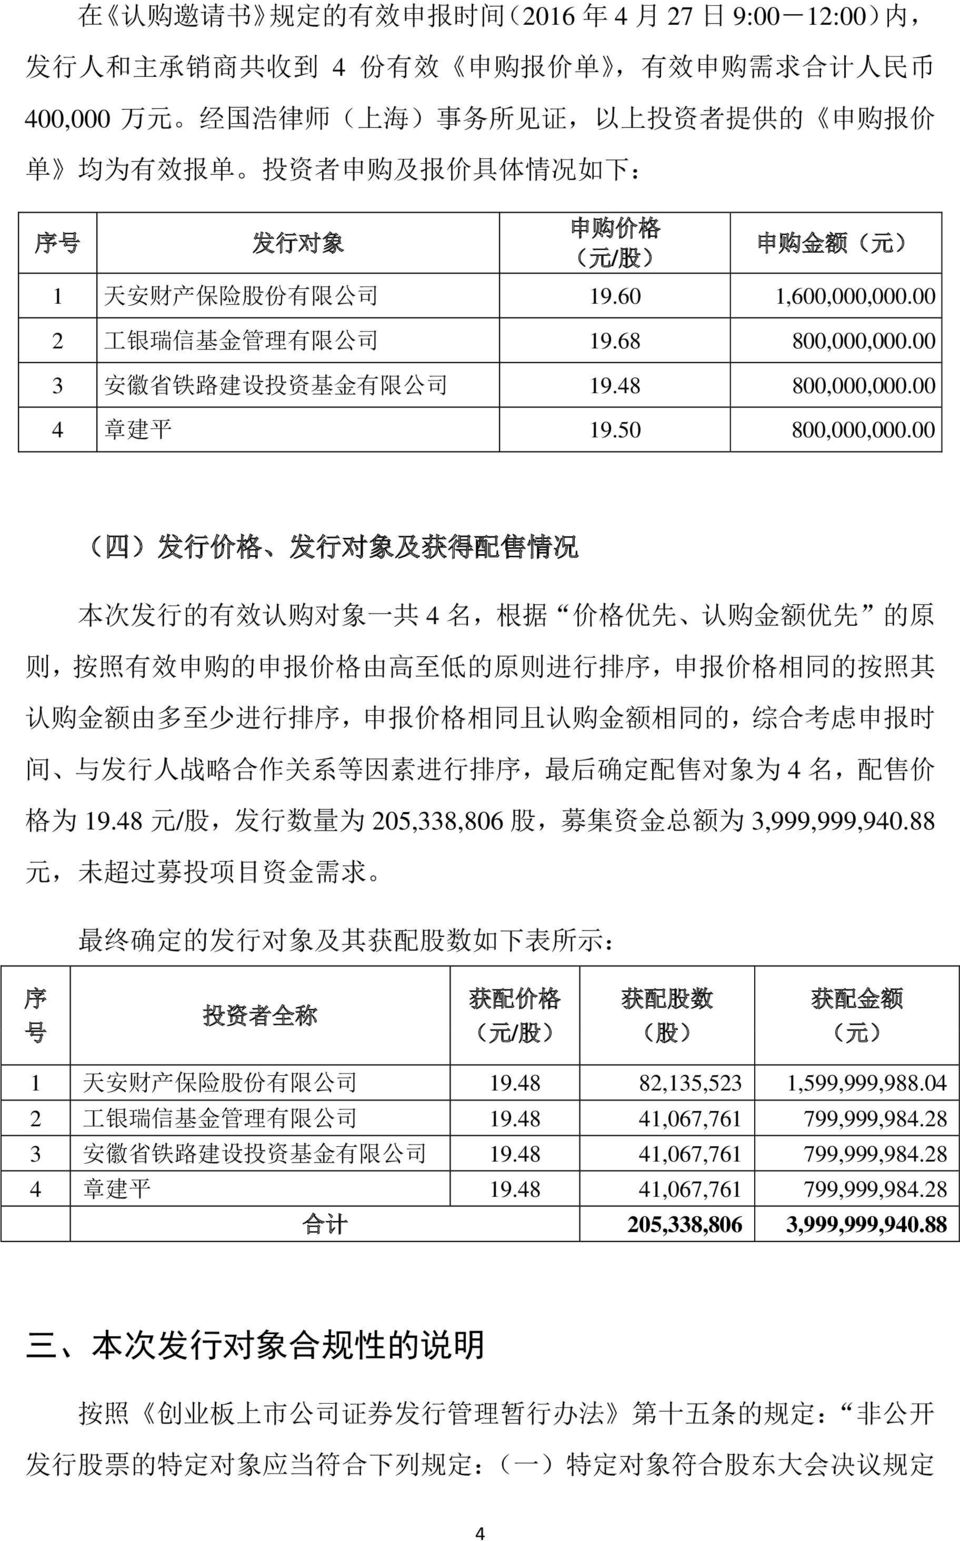 00 3 安 徽 省 铁 路 建 设 投 资 基 金 有 限 公 司 19.48 800,000,000.00 4 章 建 平 19.50 800,000,000.